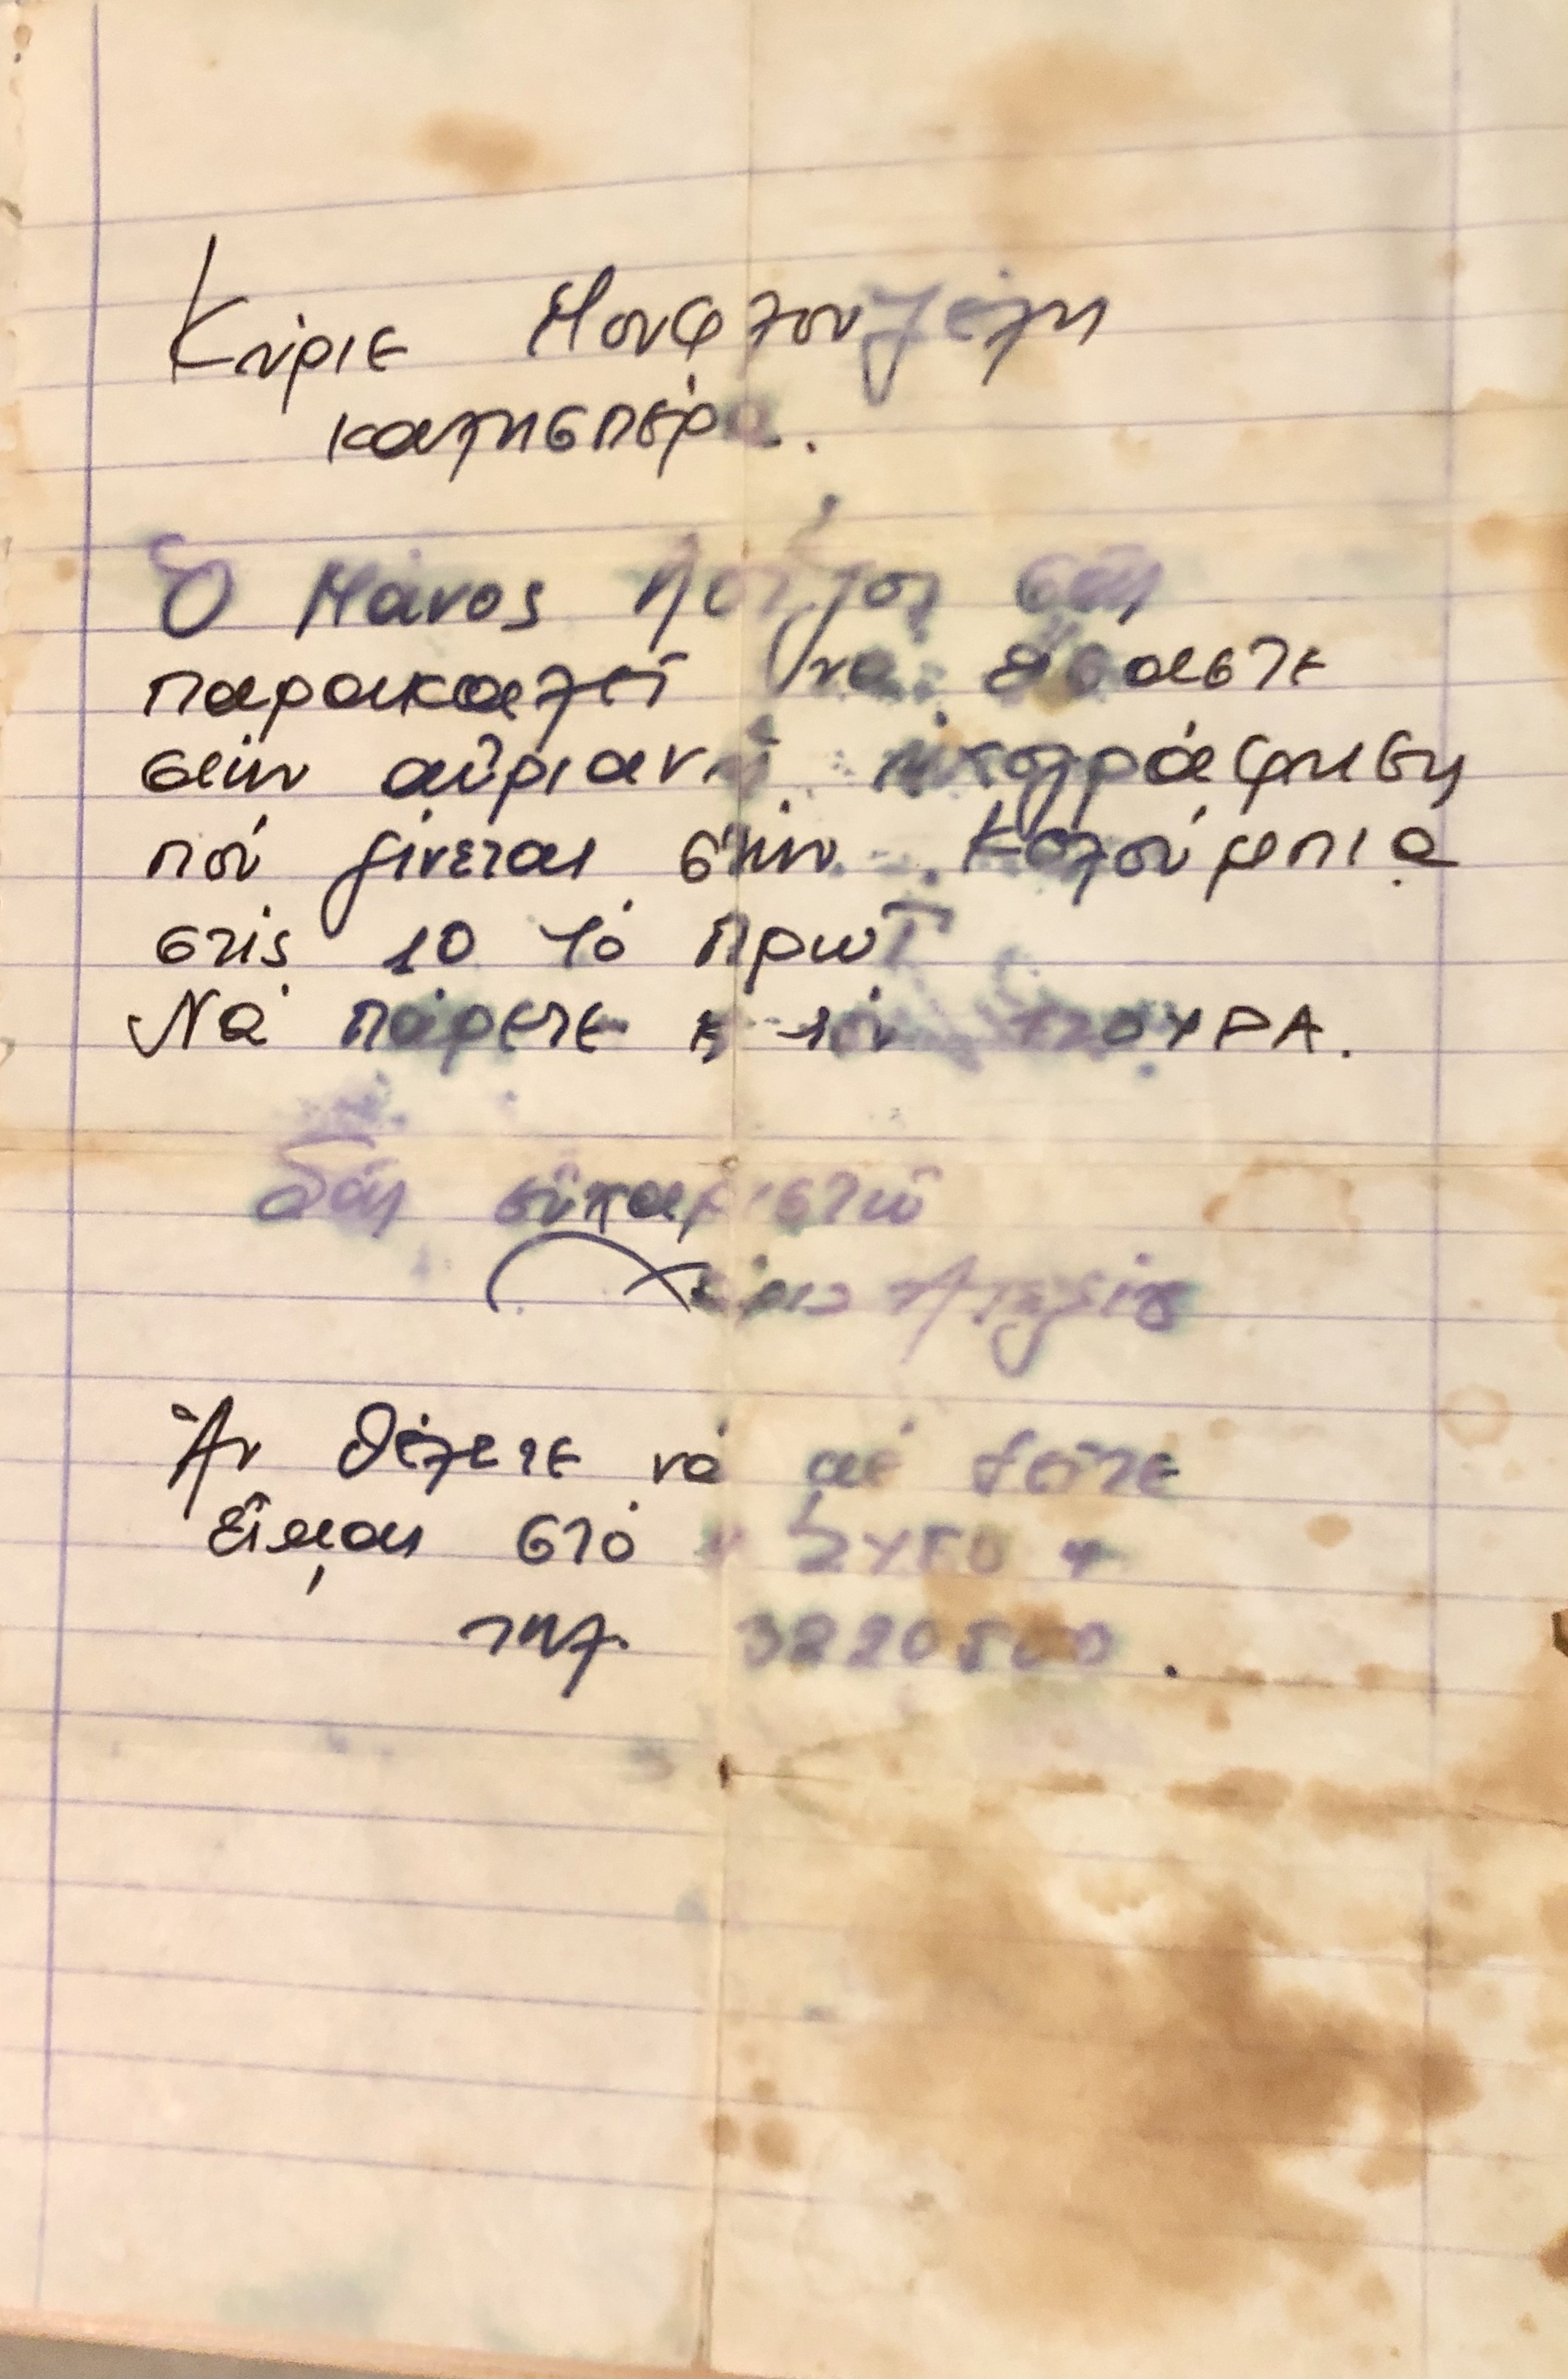 Ιδιόχειρο σημείωμα της Χαρούλας Αλεξίου που ο Μάνος Λοΐζος ζητά από τον Γιώργο Μουφλουζέλη να φέρει τον τζουρά του στο στούντιο της Columbia